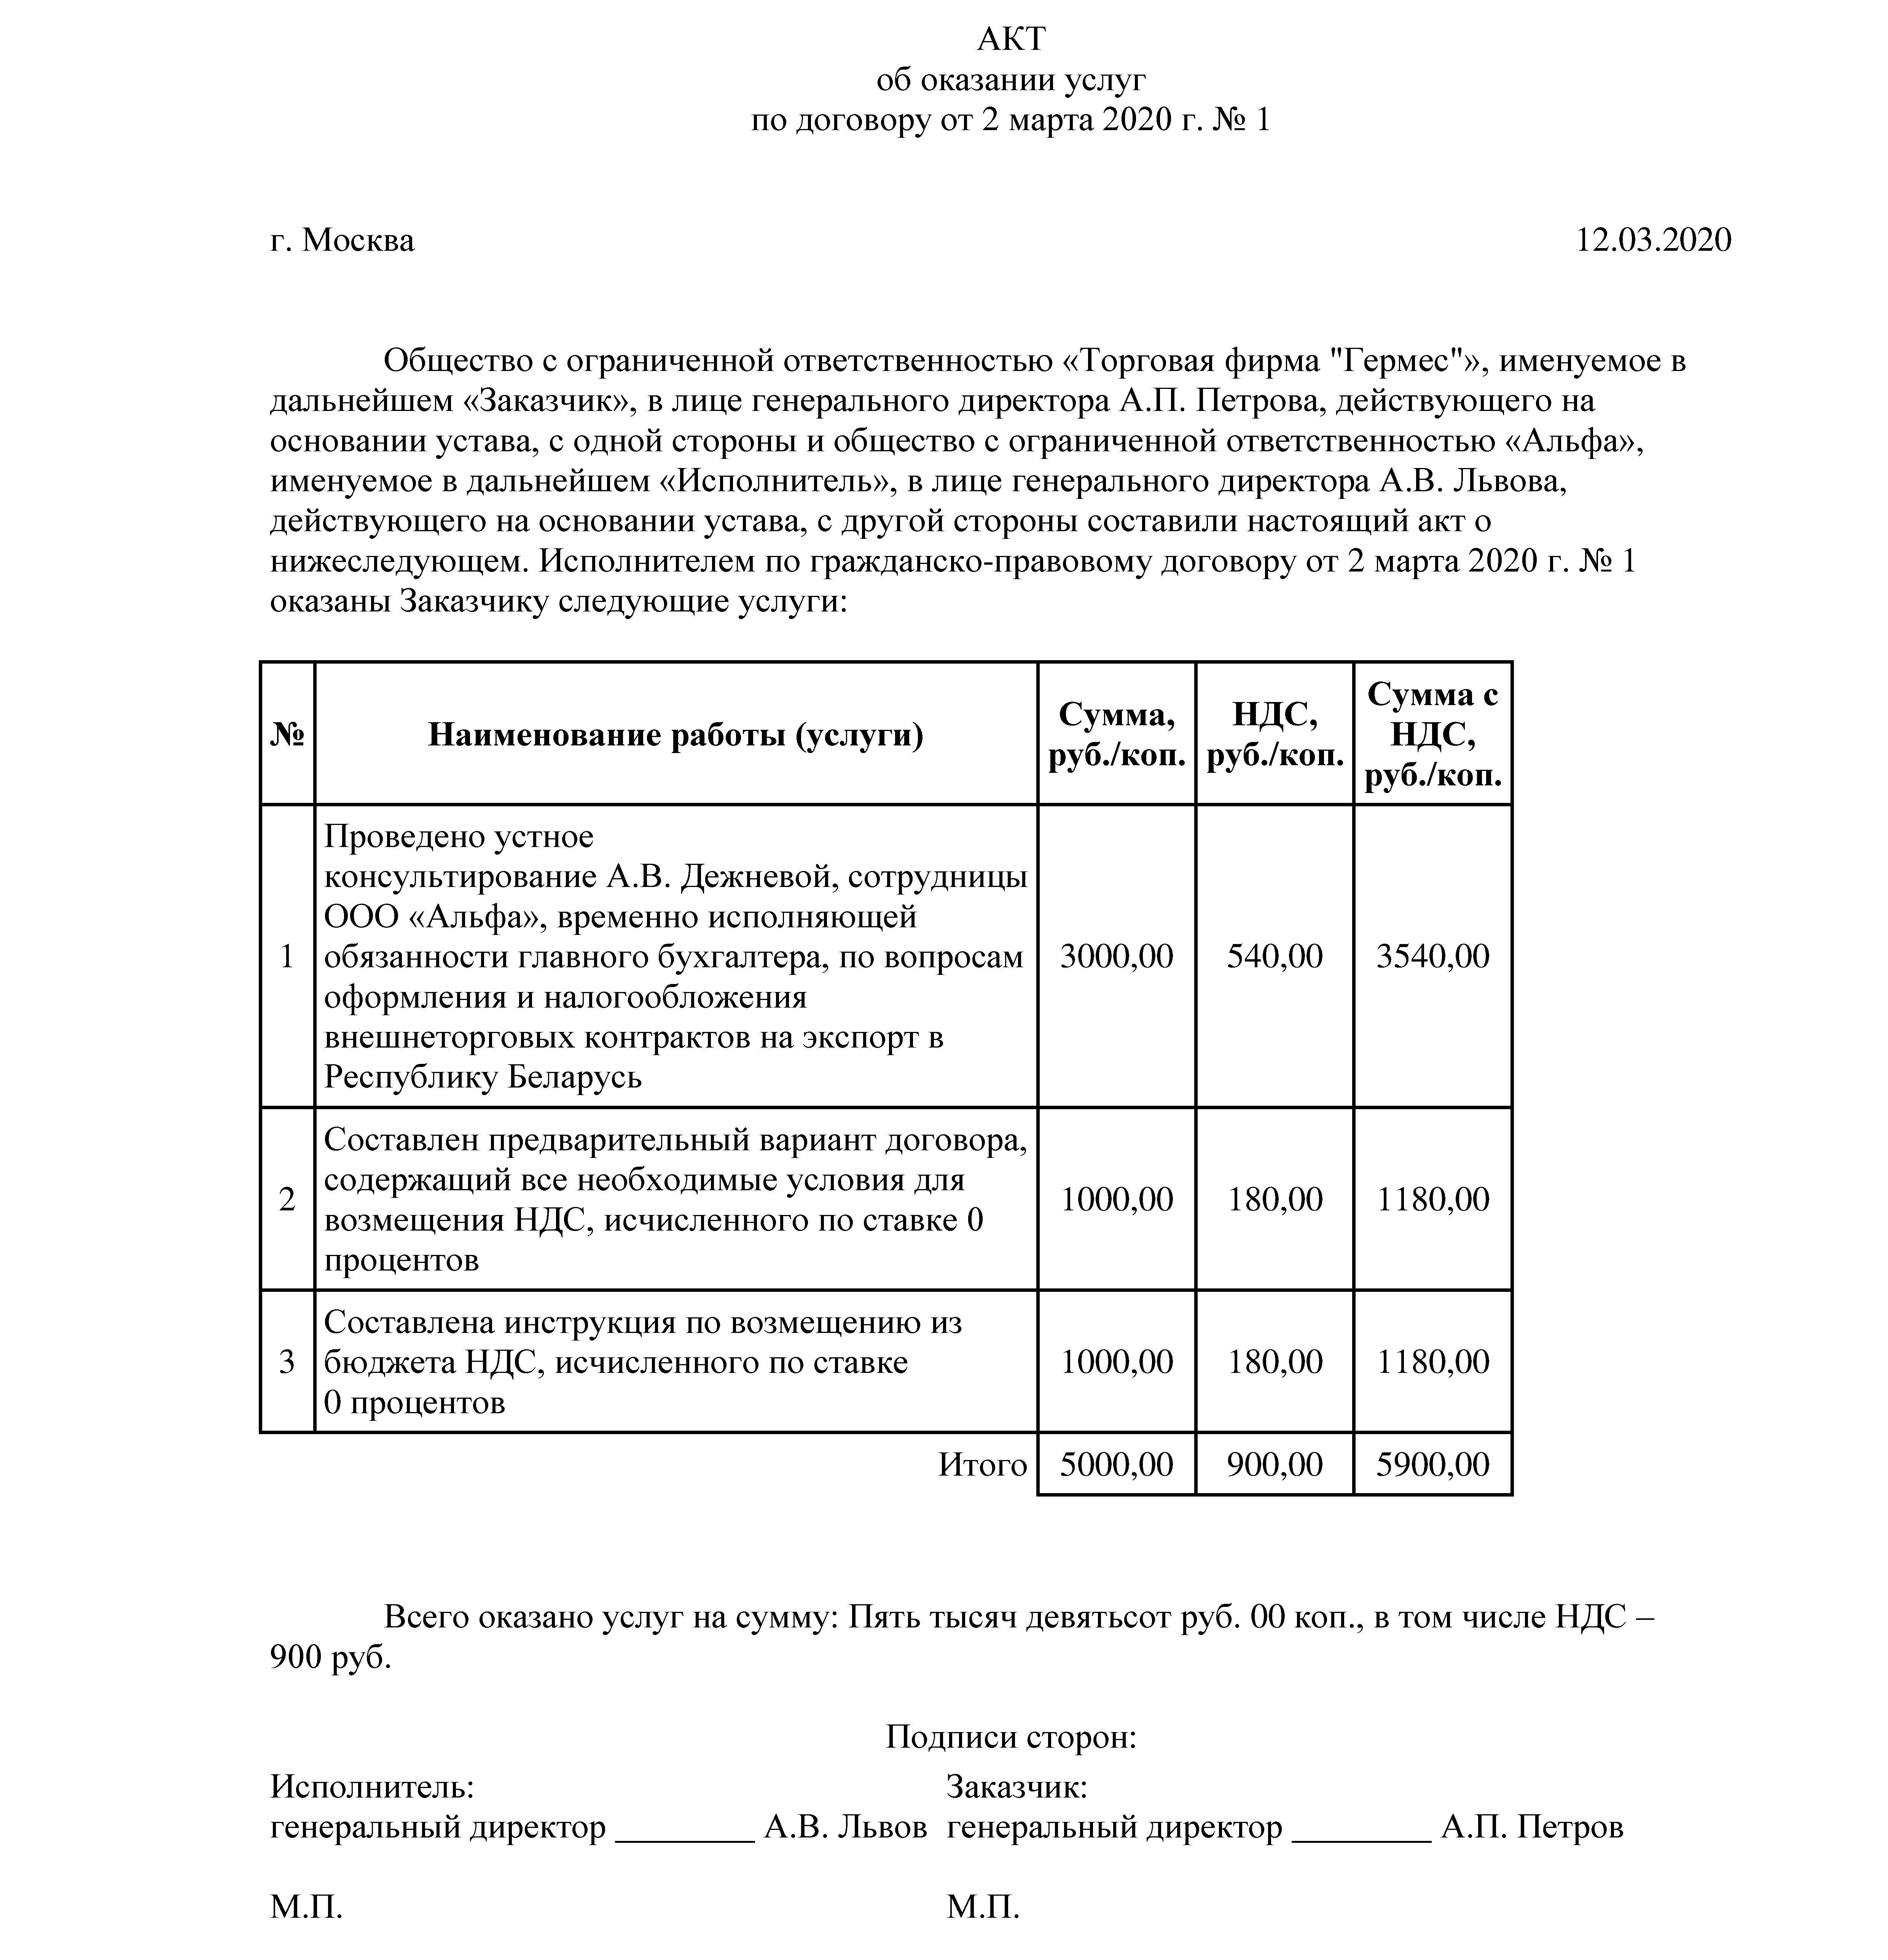 Proverki gov ru план проверок 2017